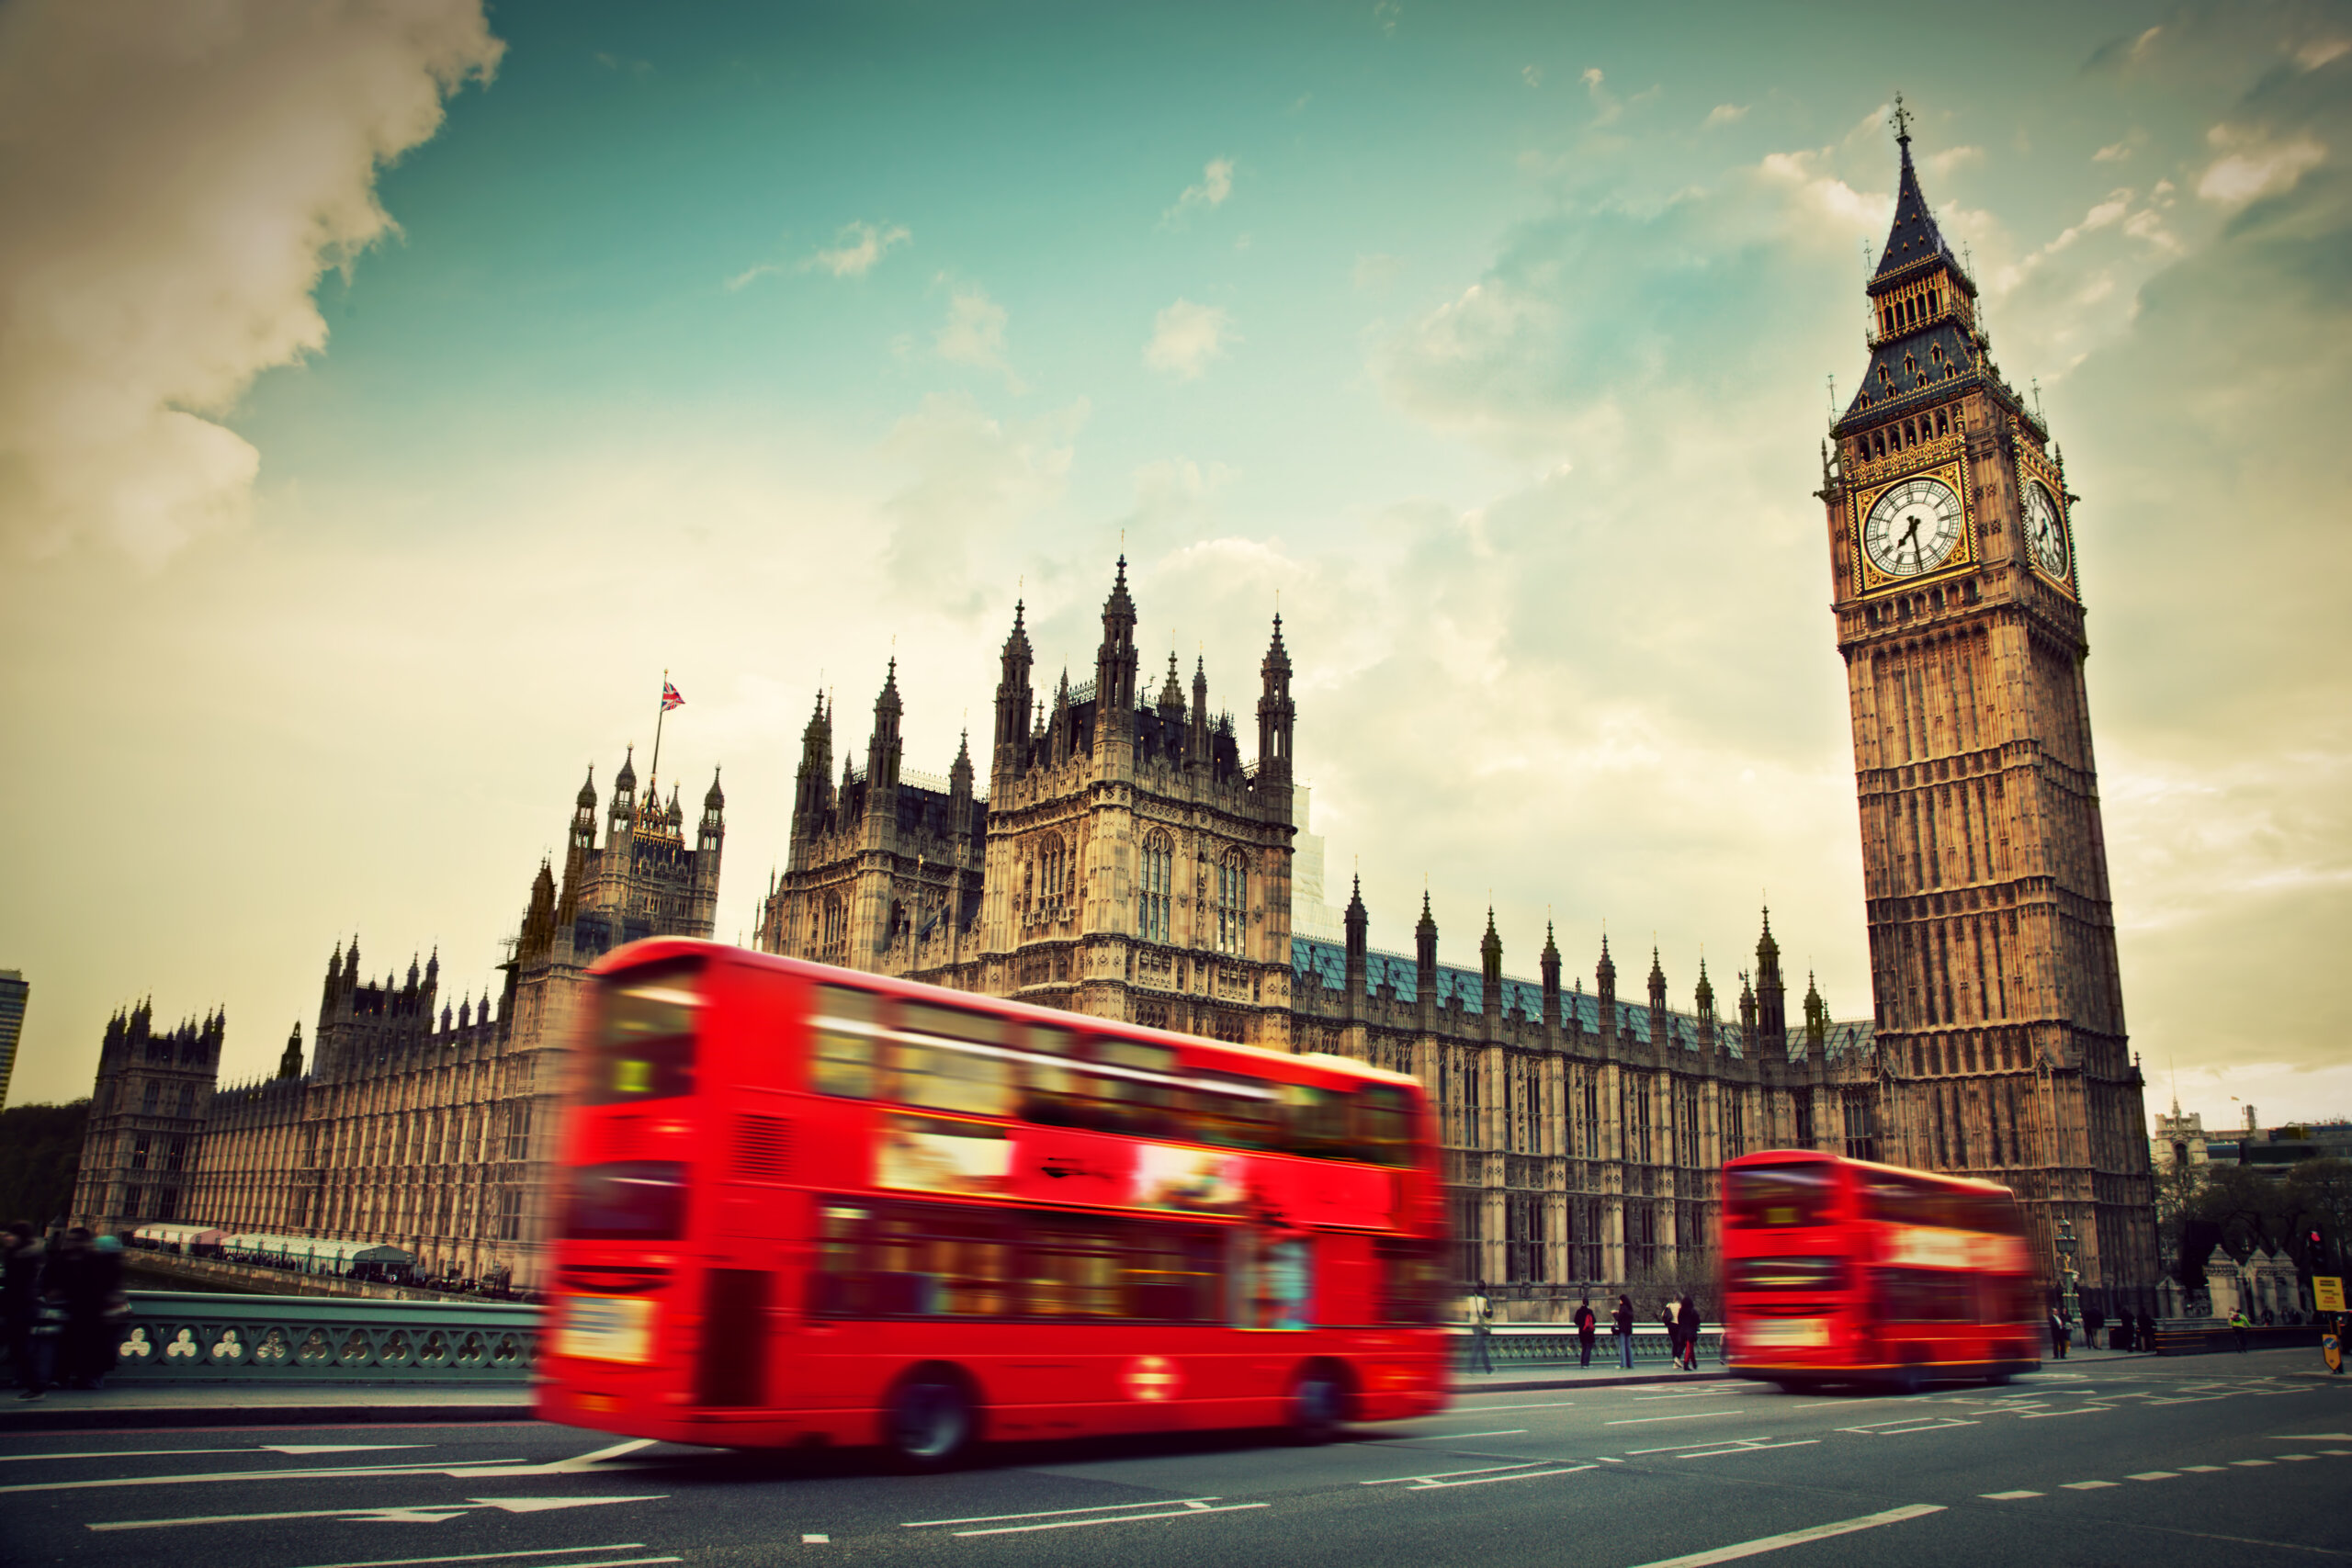 Londyn, Wielka Brytania. Czerwony autobus w ruchu i Big Ben, Pałac Westminsterski. Ikony Anglii w stylu vintage, retro